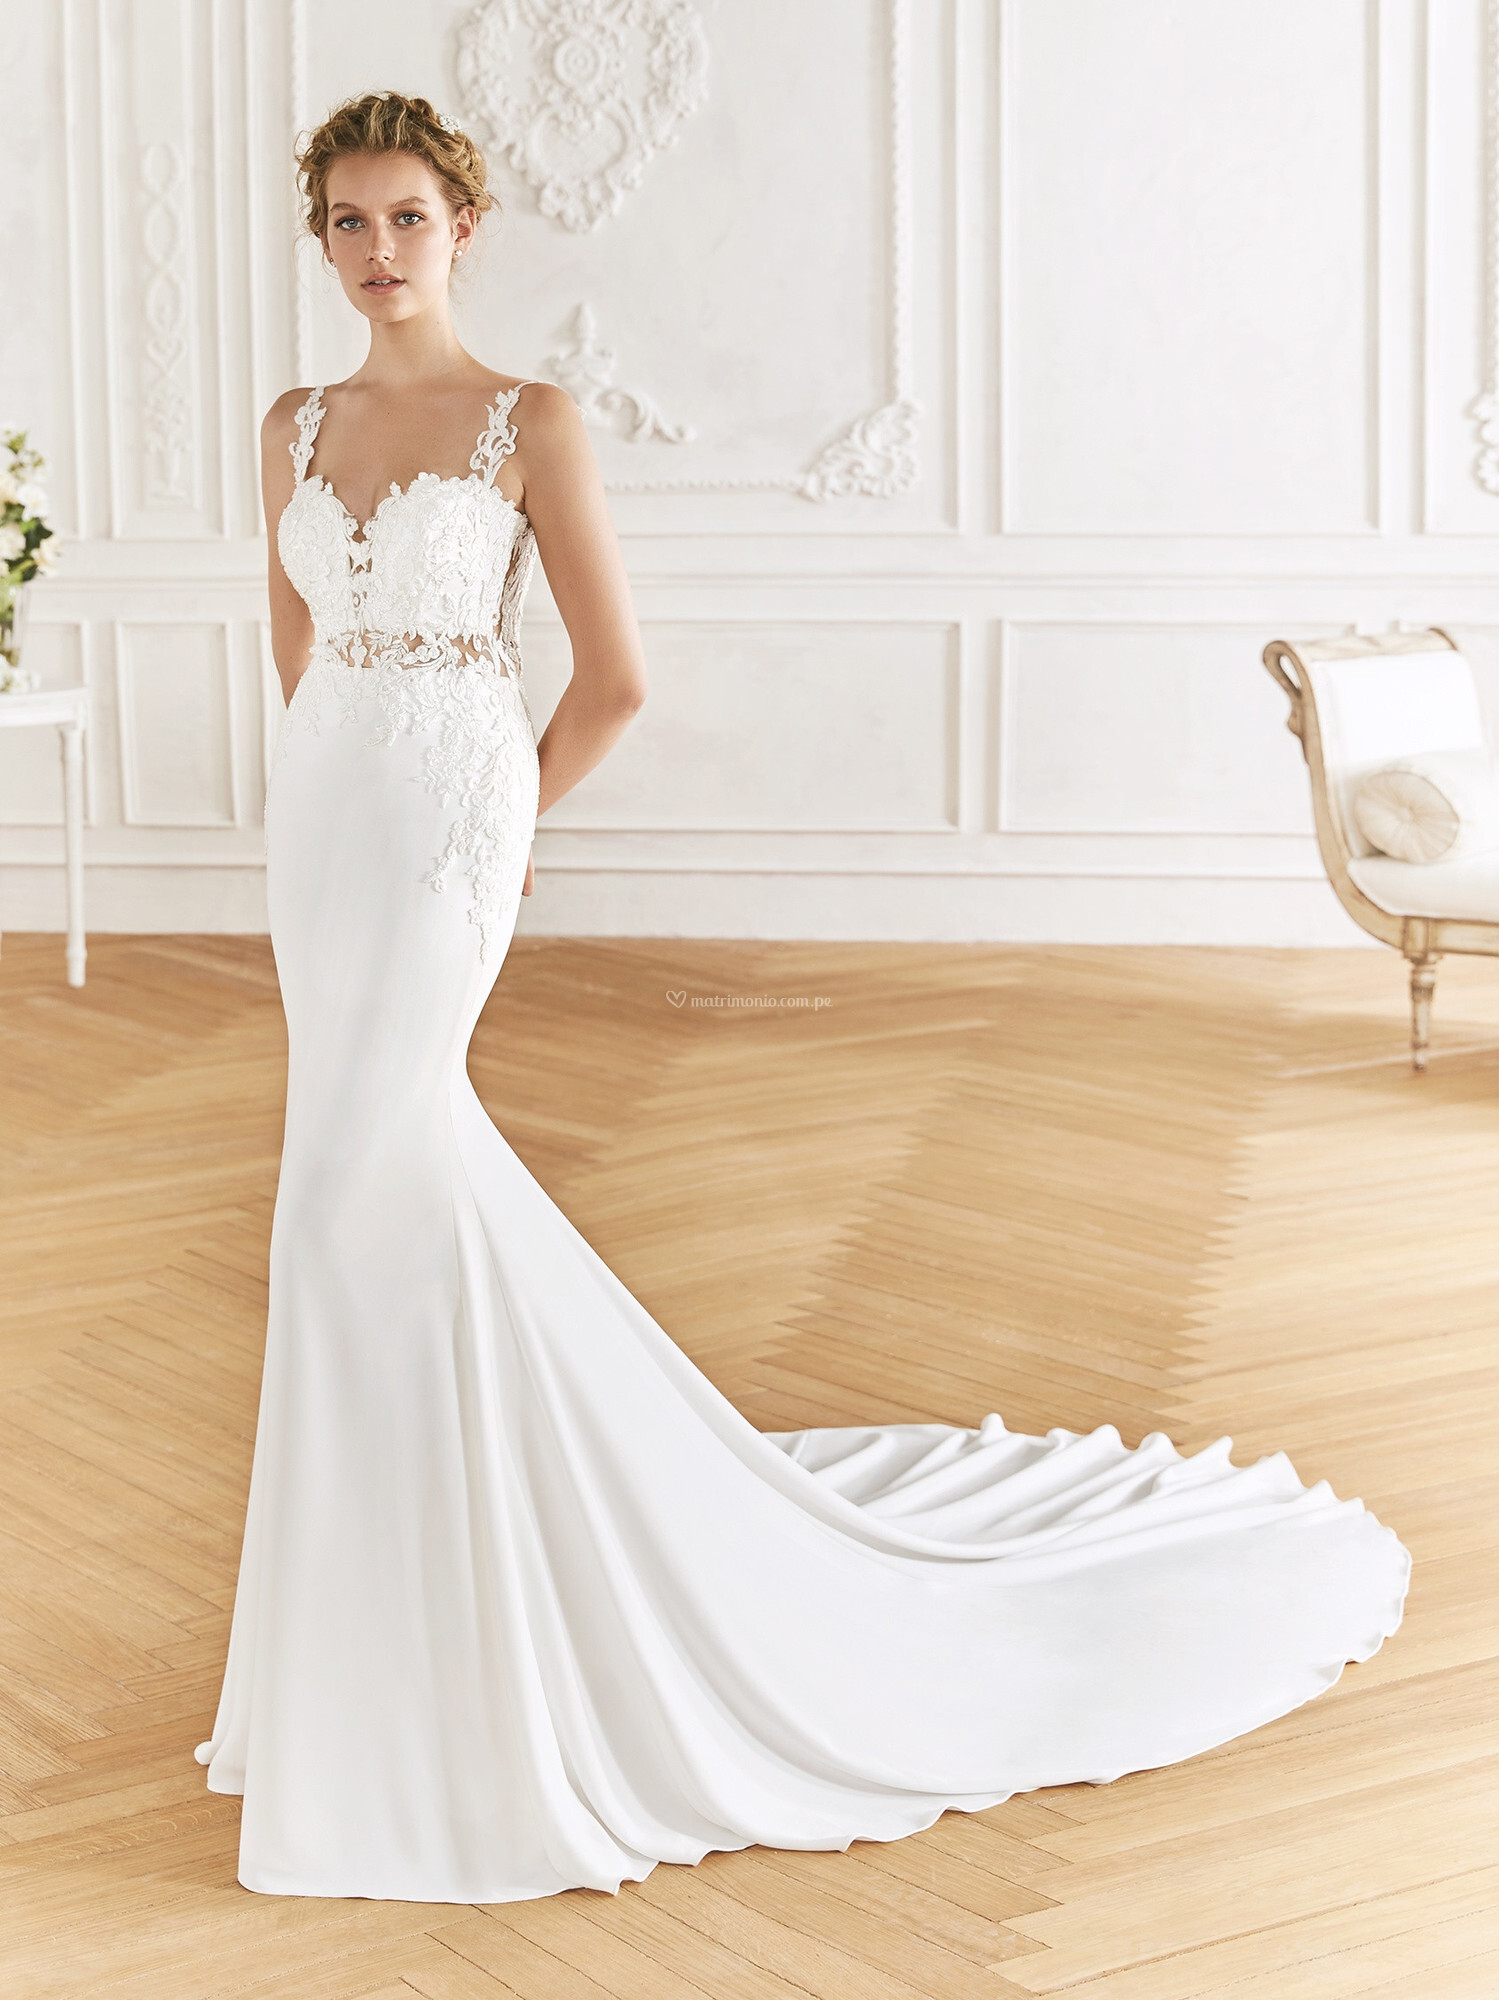 ¡Lo ÚLTIMO en vestidos de novia corte imperio! 👰 💗 3